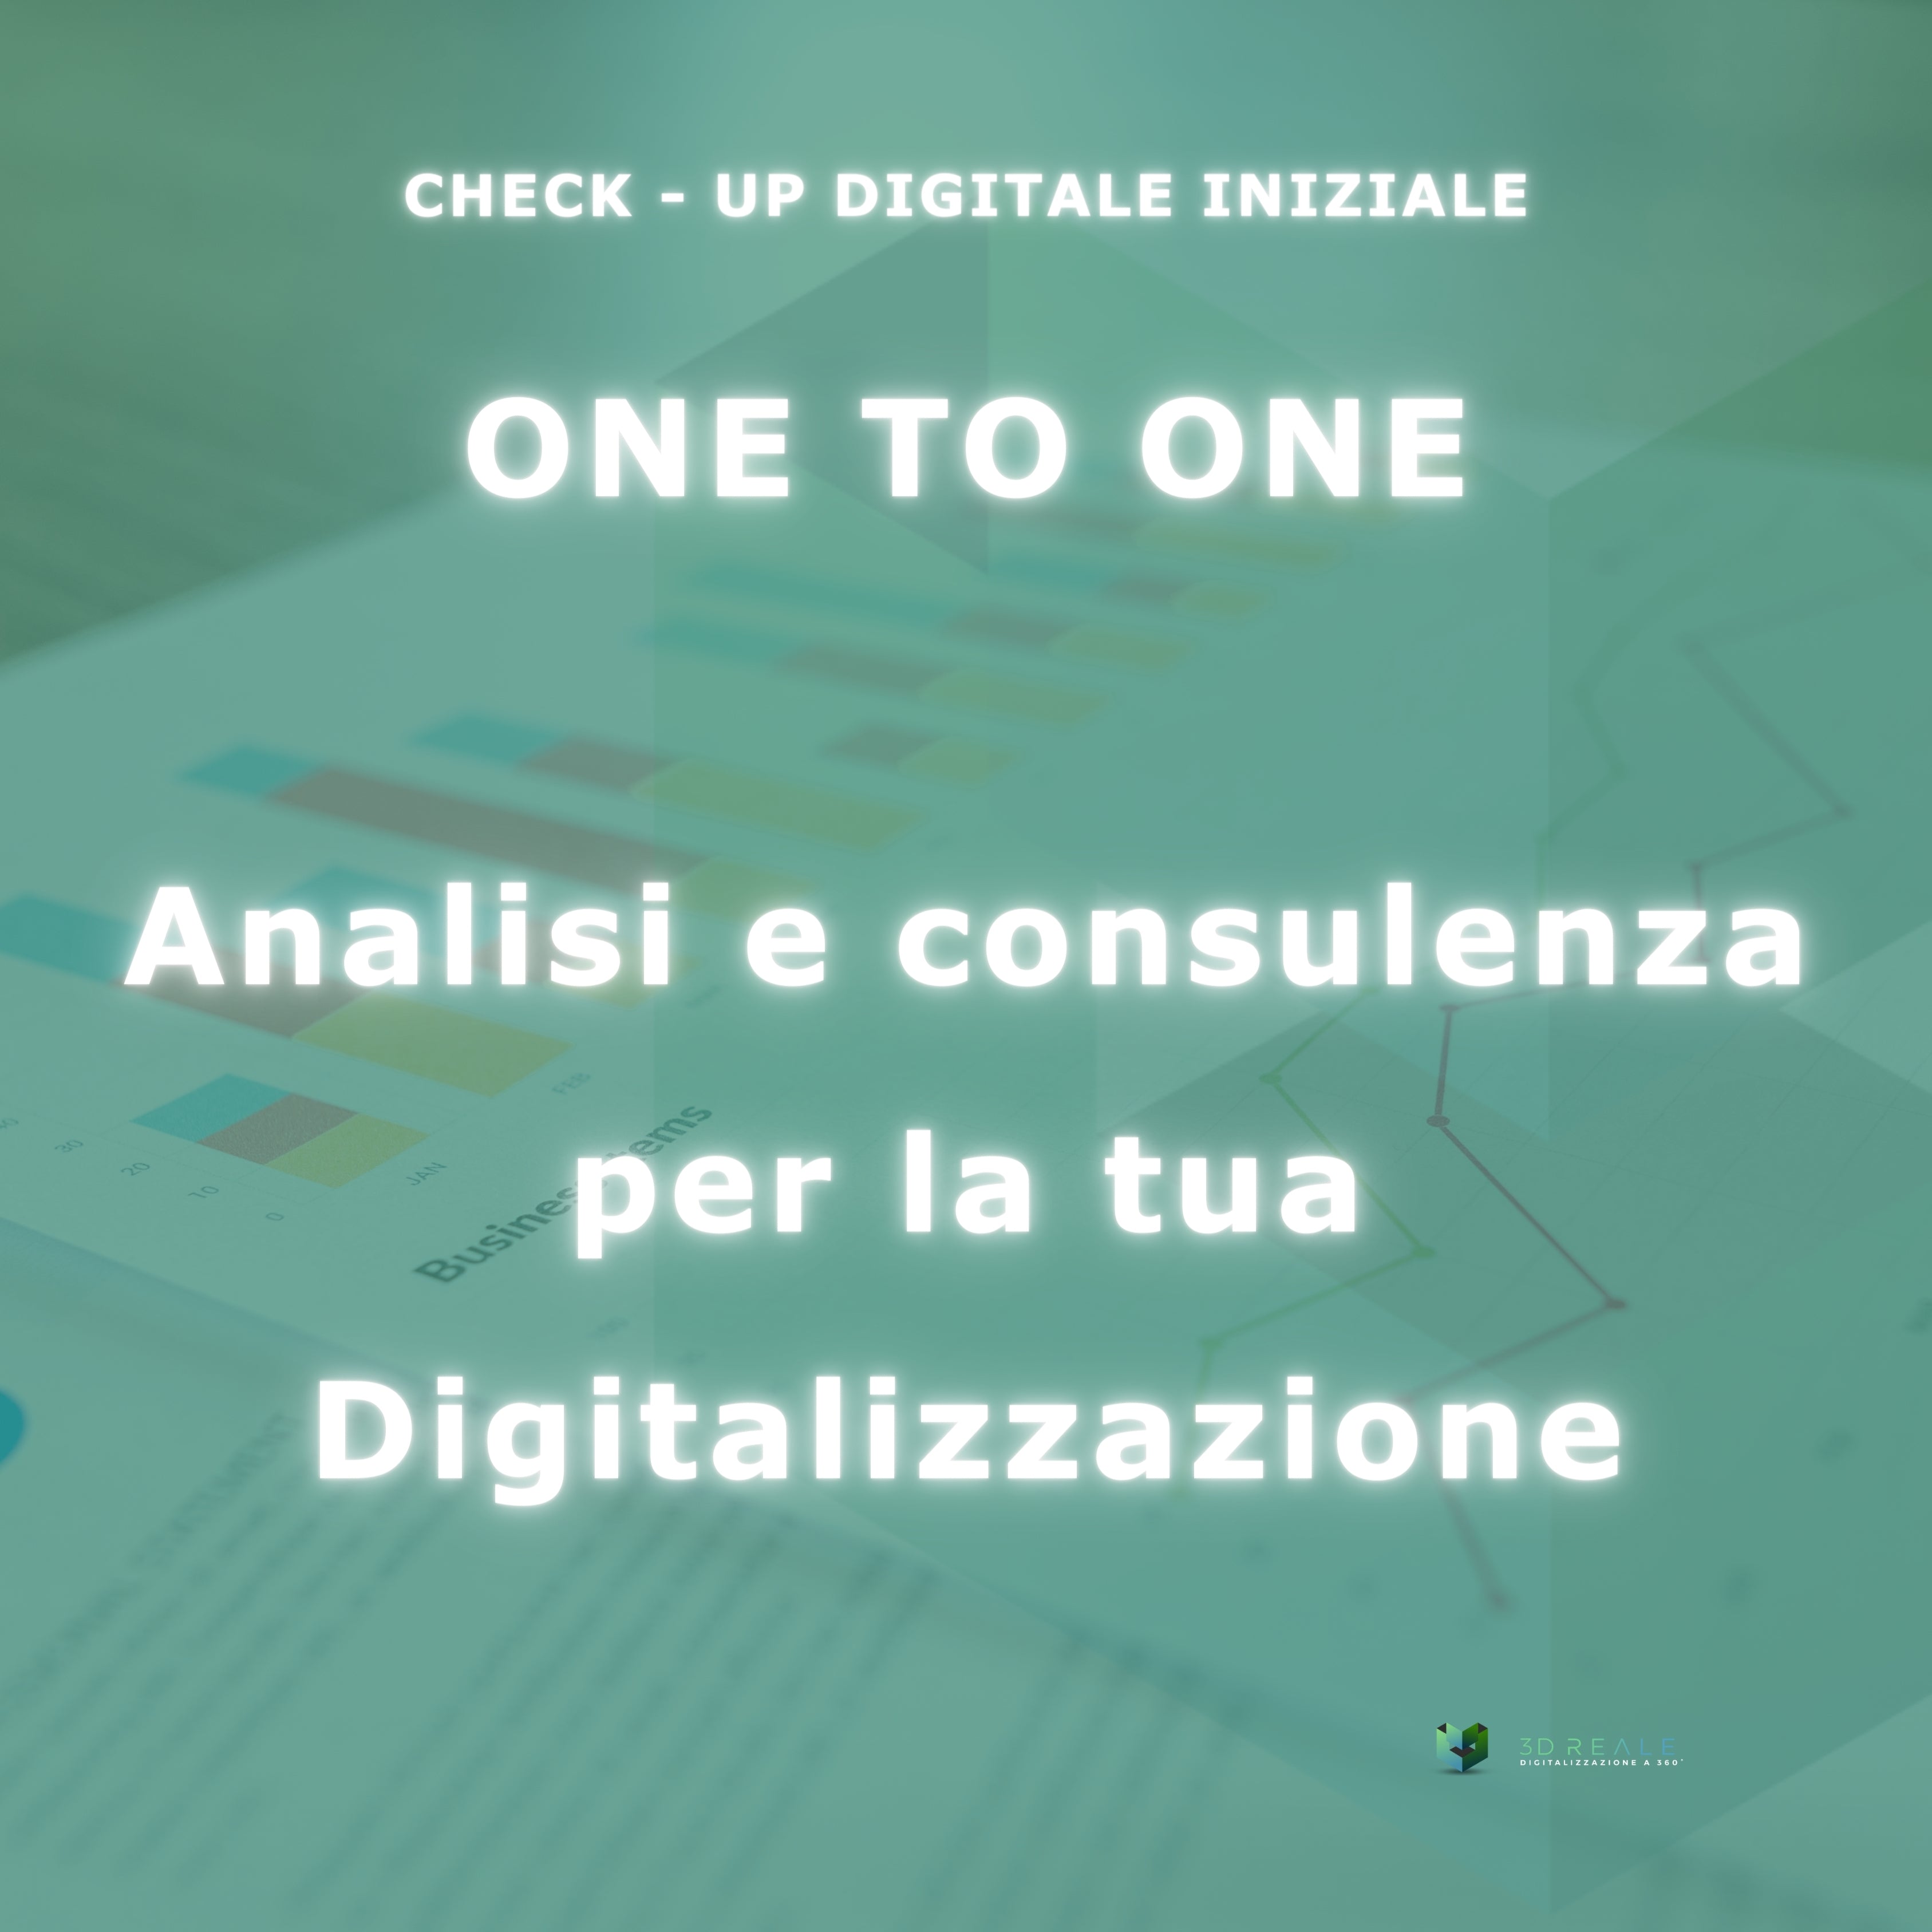 ONEtoONE_CHECK - UP DIGITALE INIZIALE: Analisi e Consulenza per la Tua Digitalizzazione!